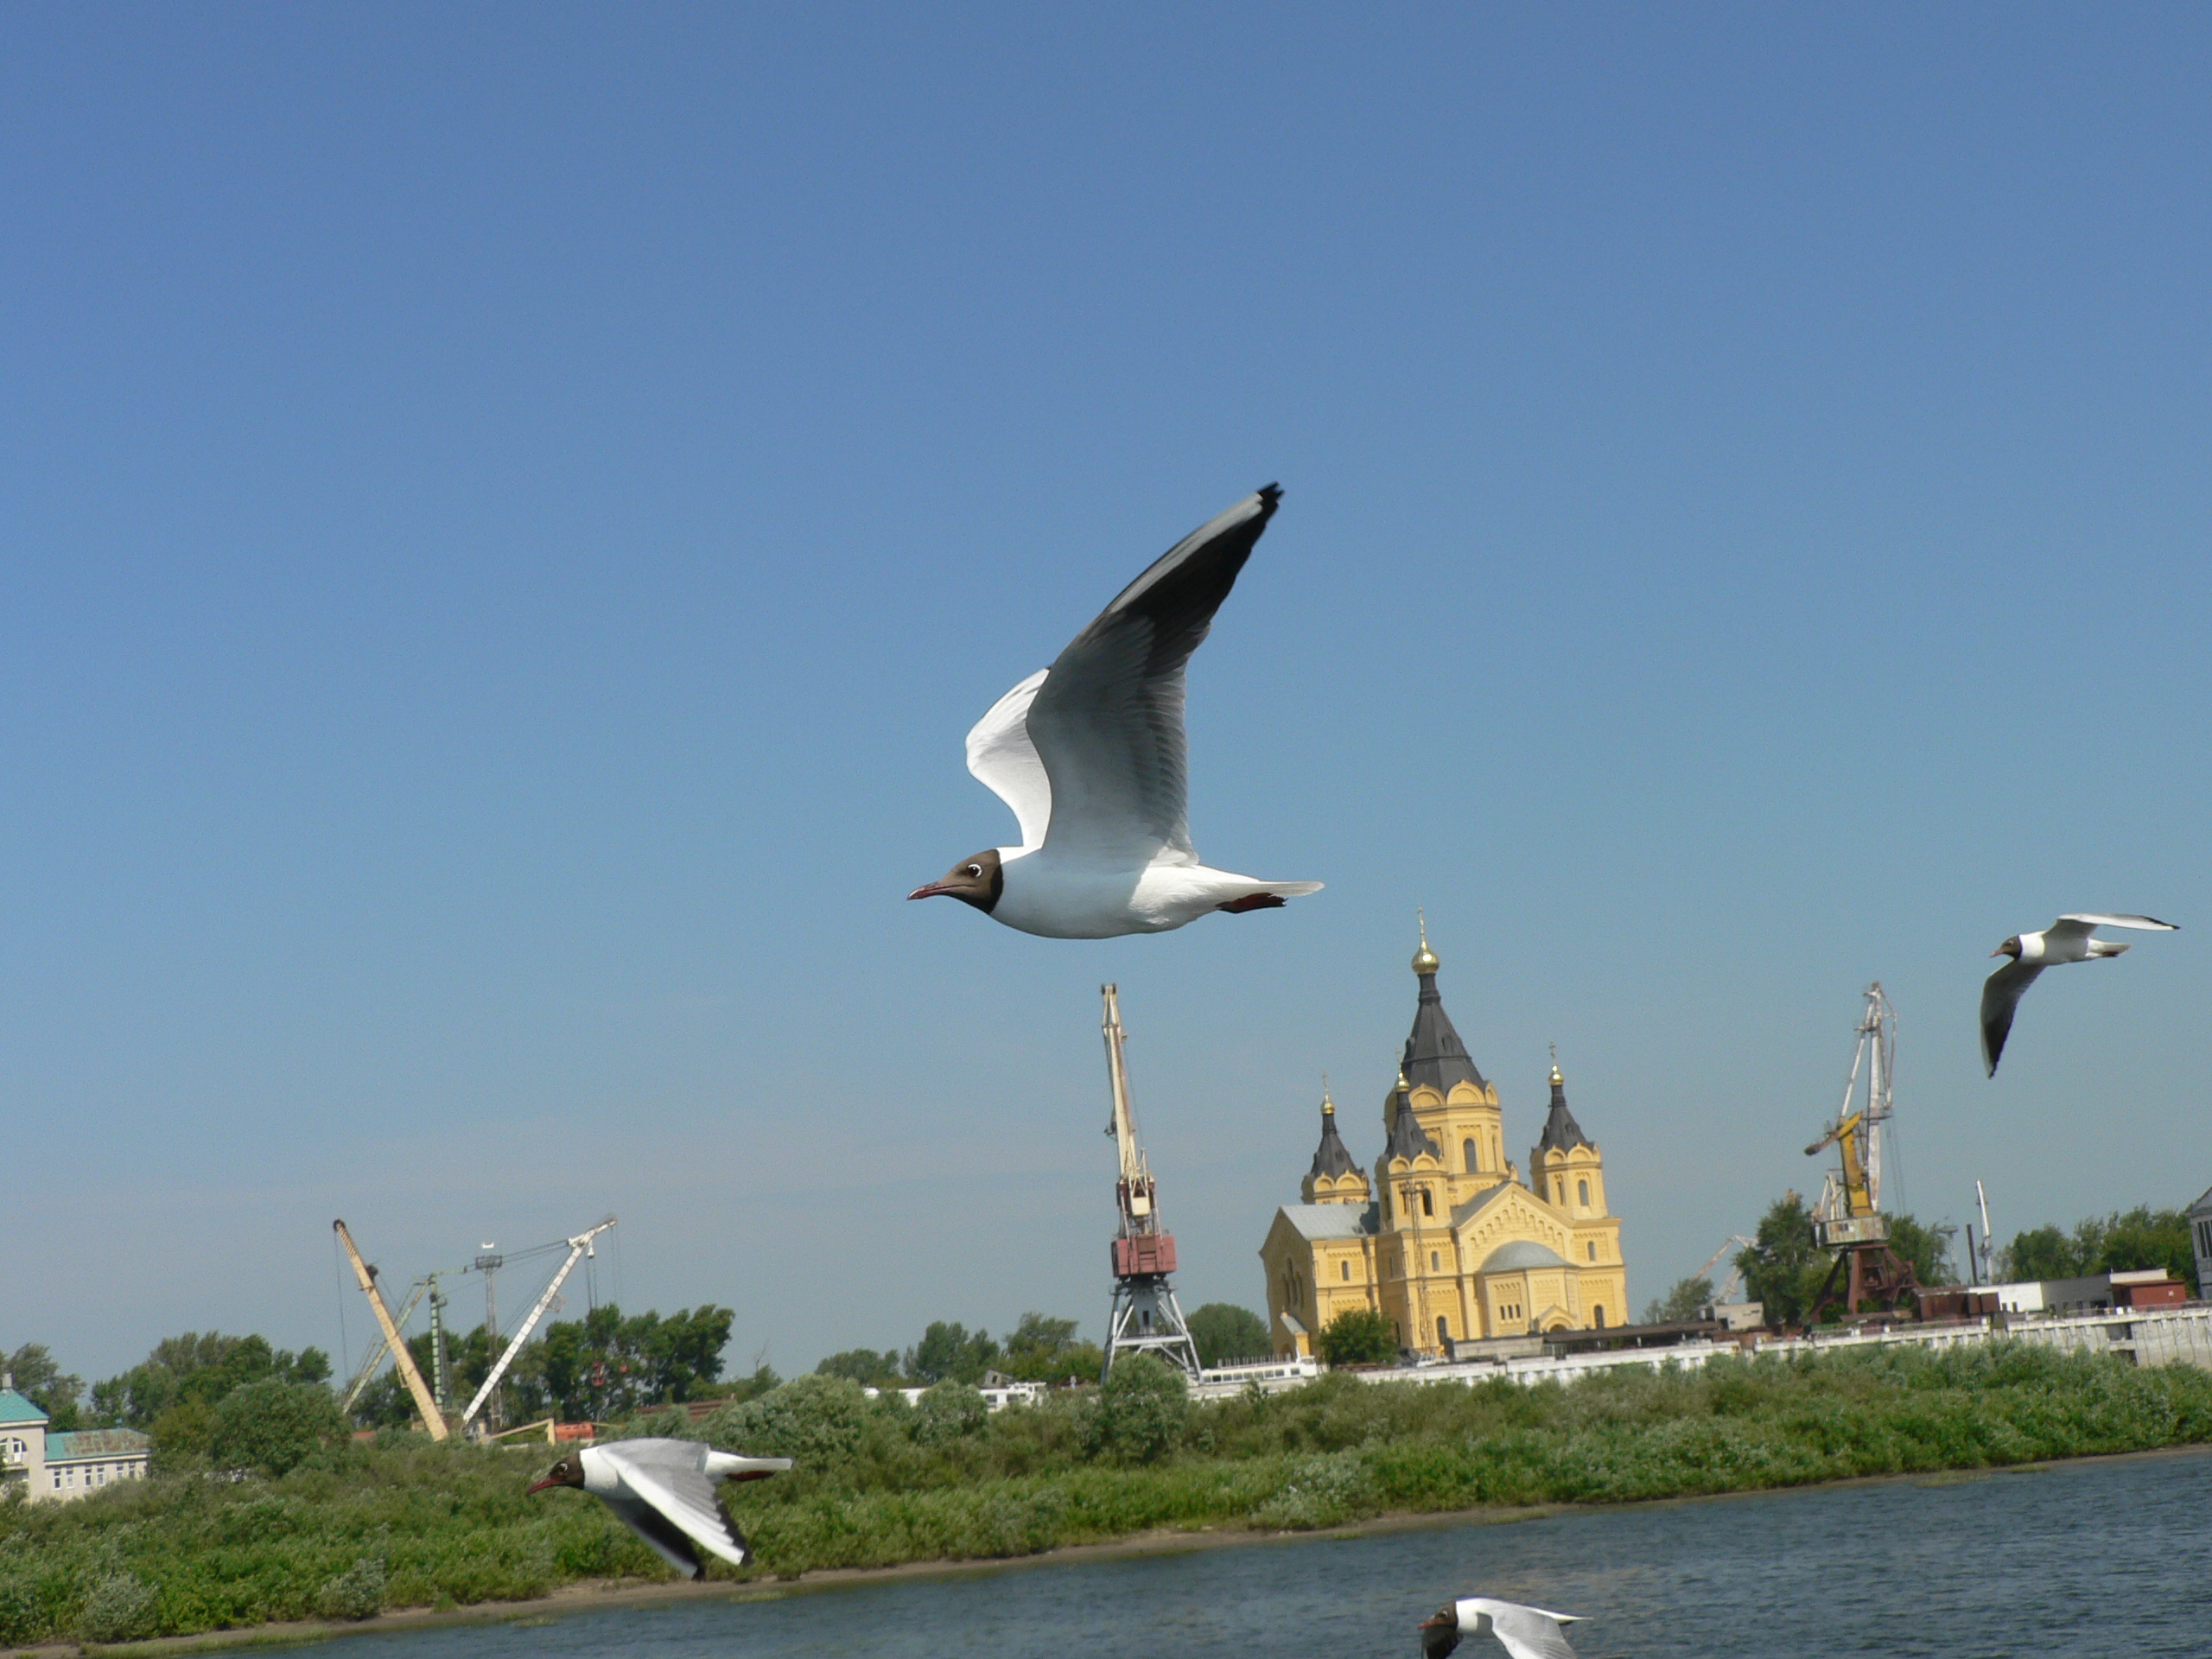 Сайт нижегородской чайки